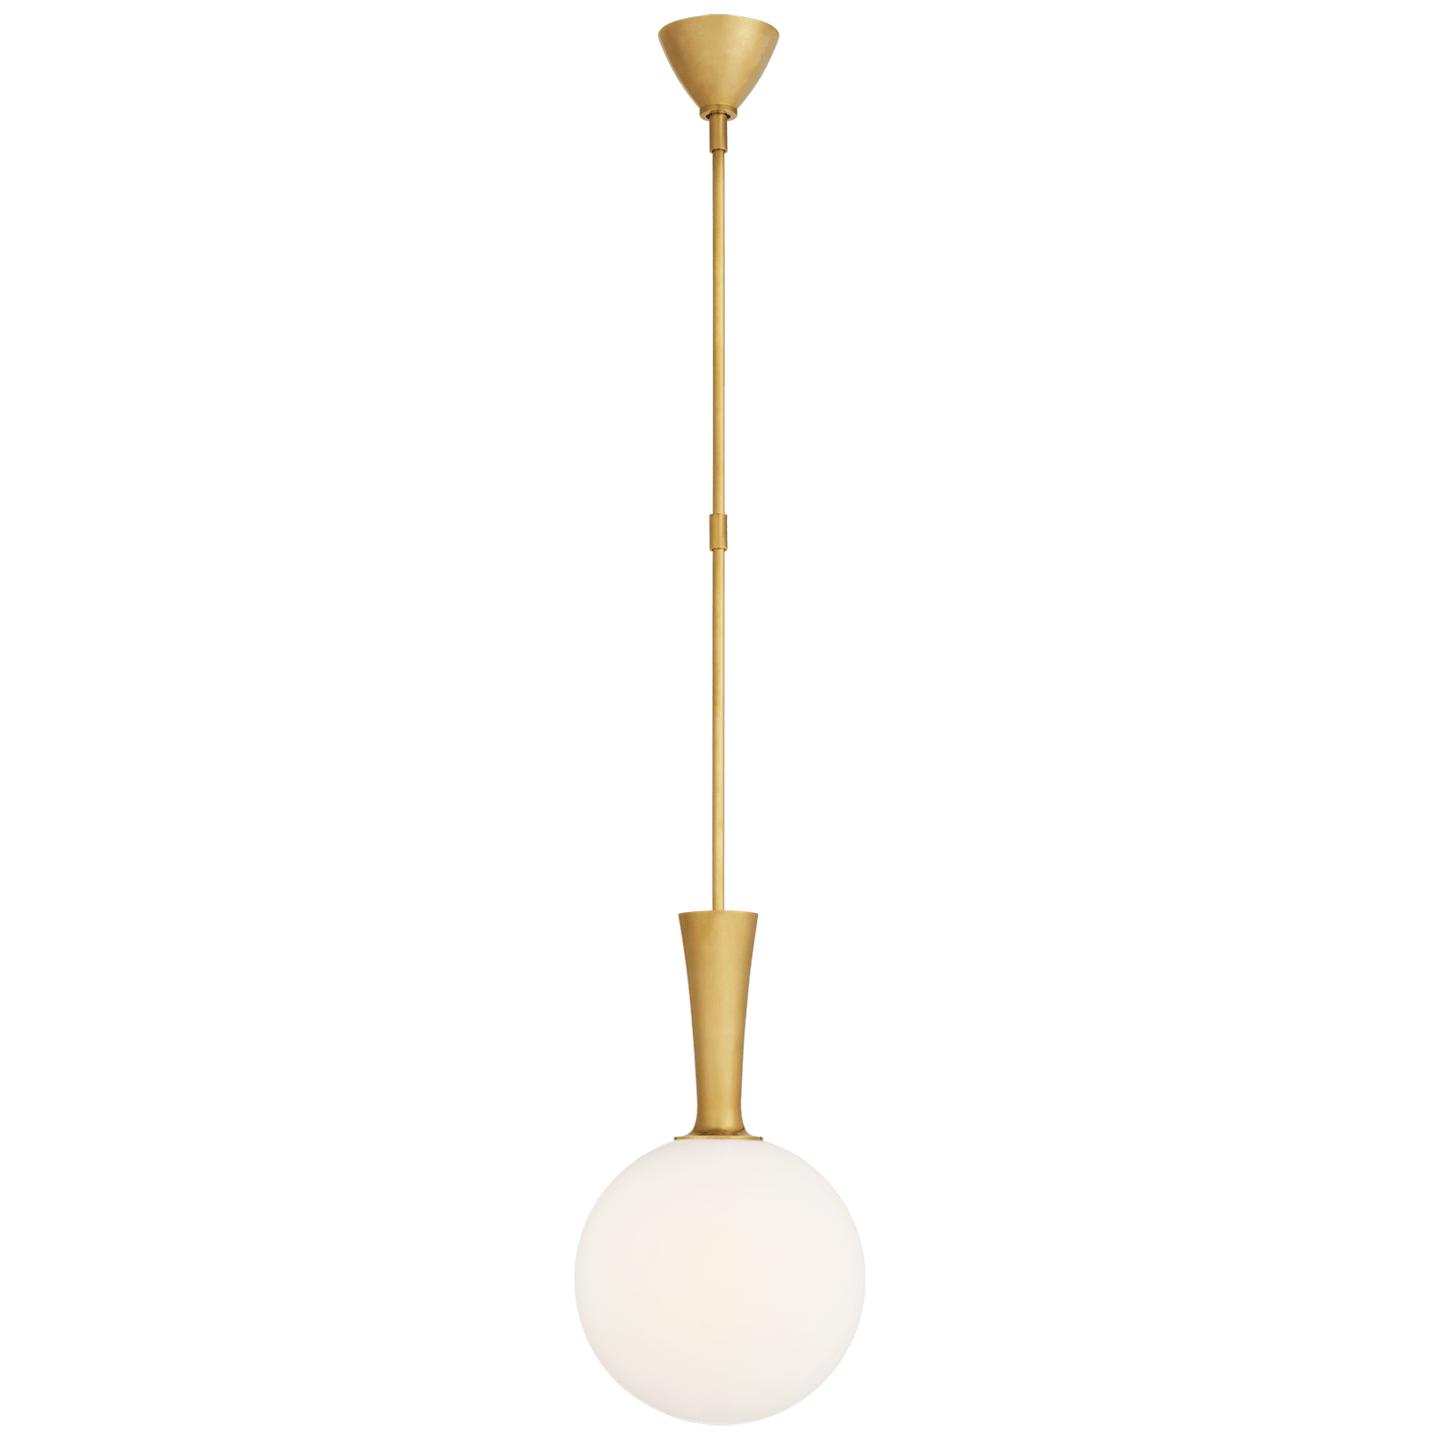 Купить Подвесной светильник Sesia Small Globe Pendant в интернет-магазине roooms.ru